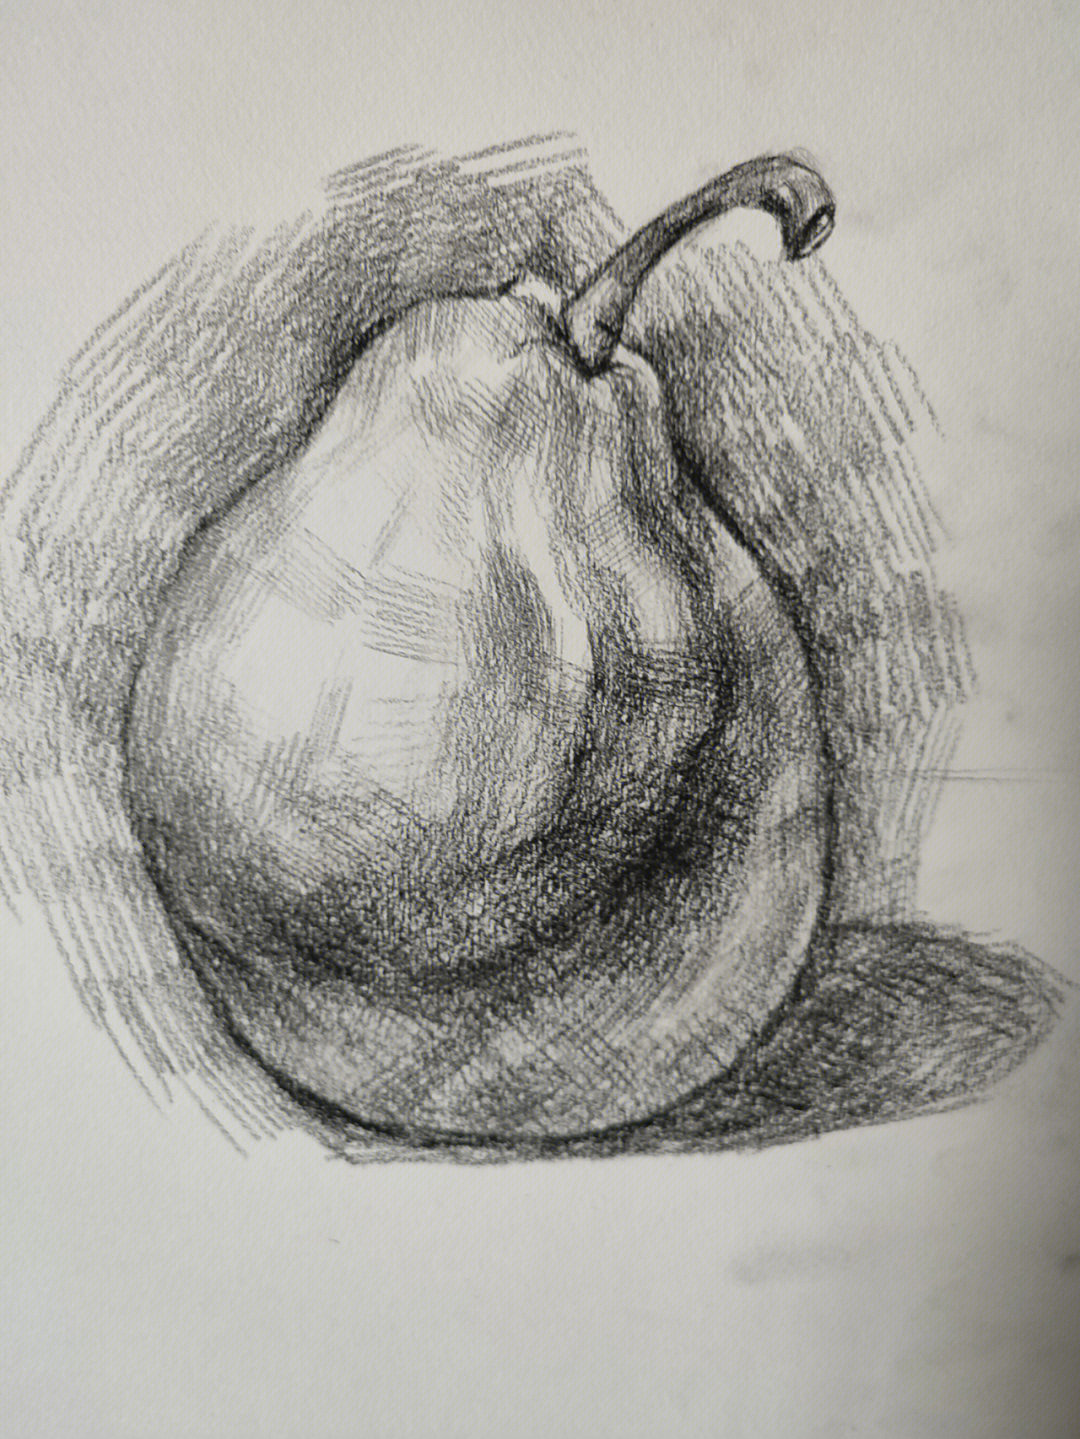 结构素描梨子图片